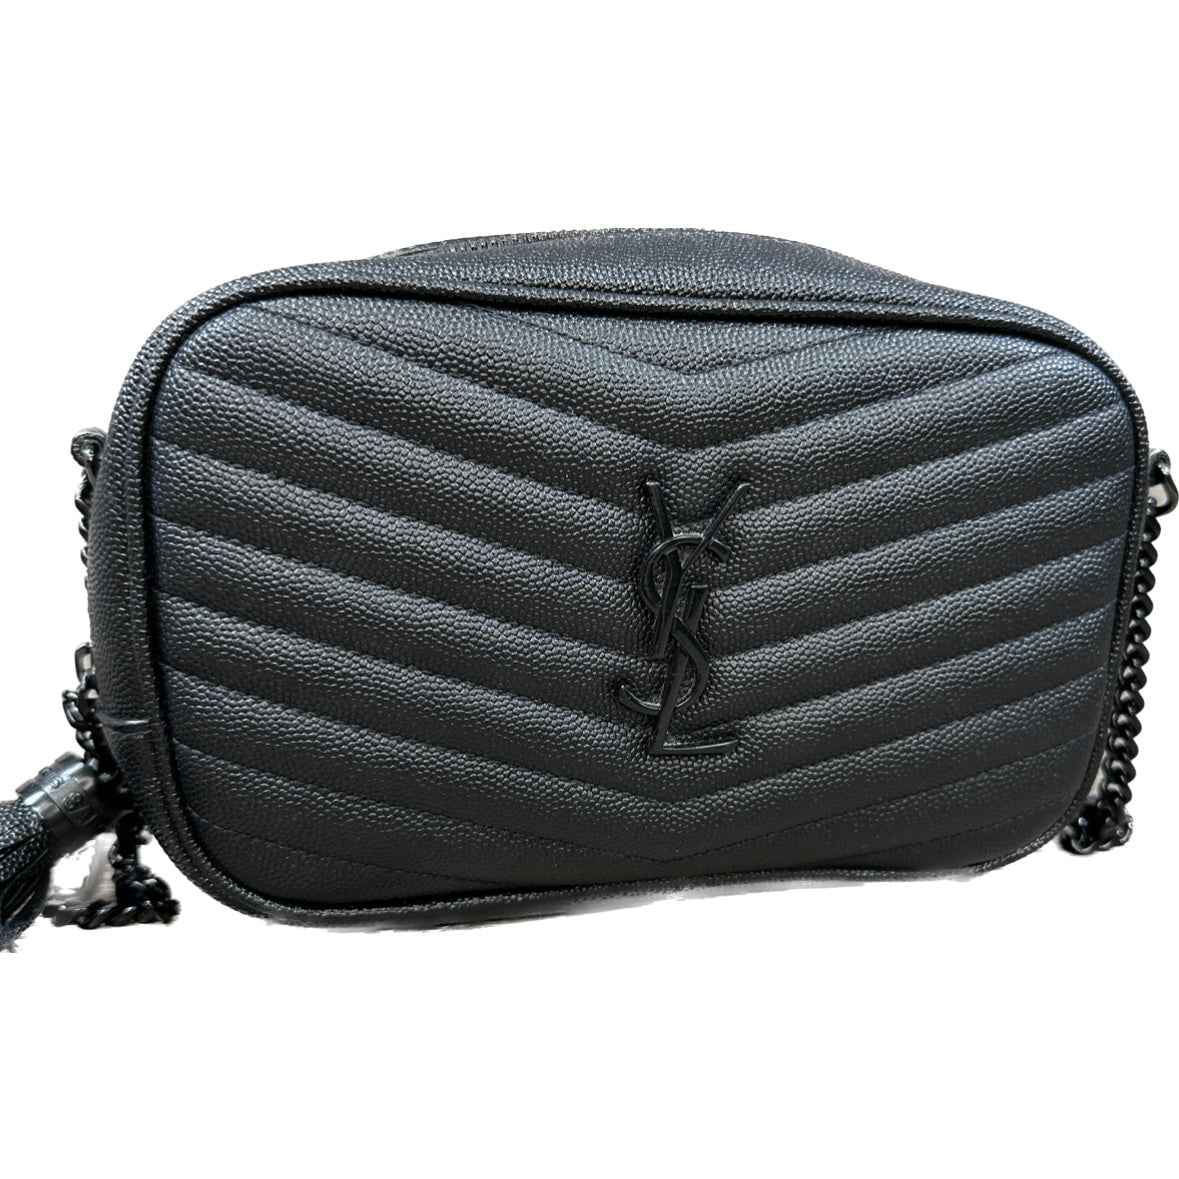 lou mini bag in grain de poudre embossed leather